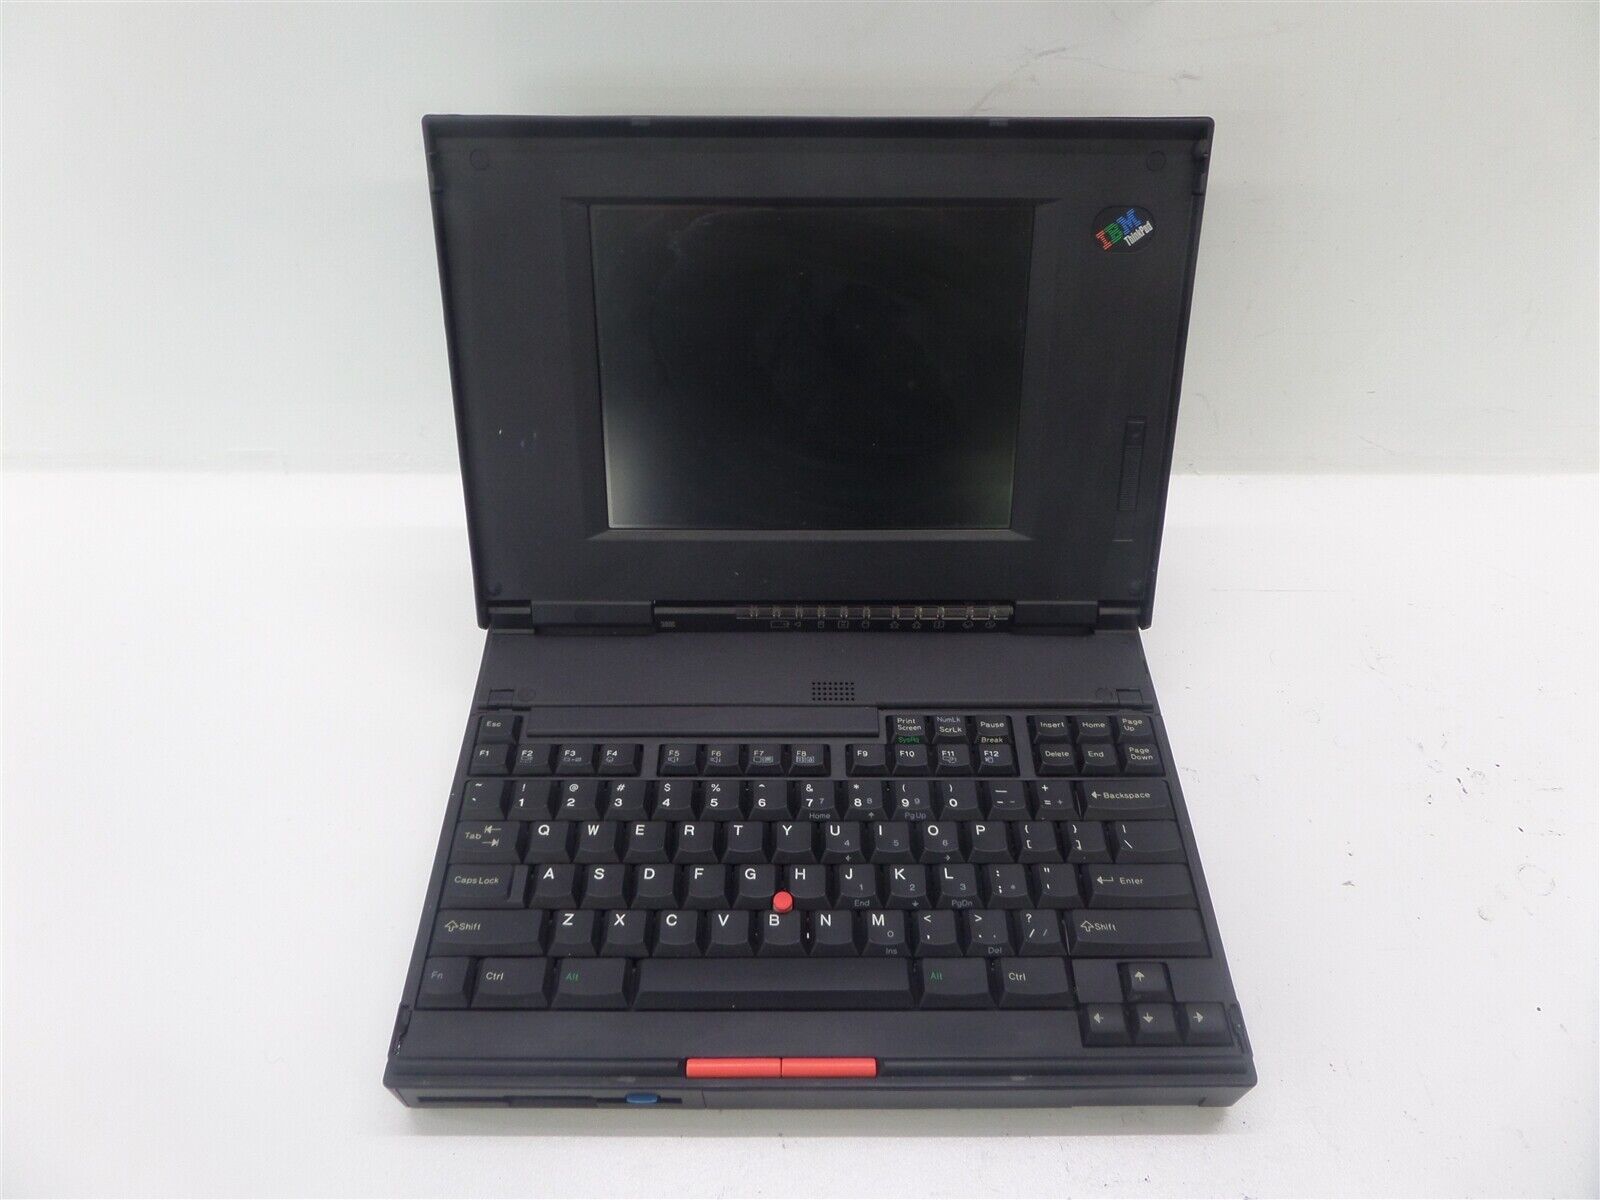 IBM ThinkPad 360C Type 2620 - No HDD